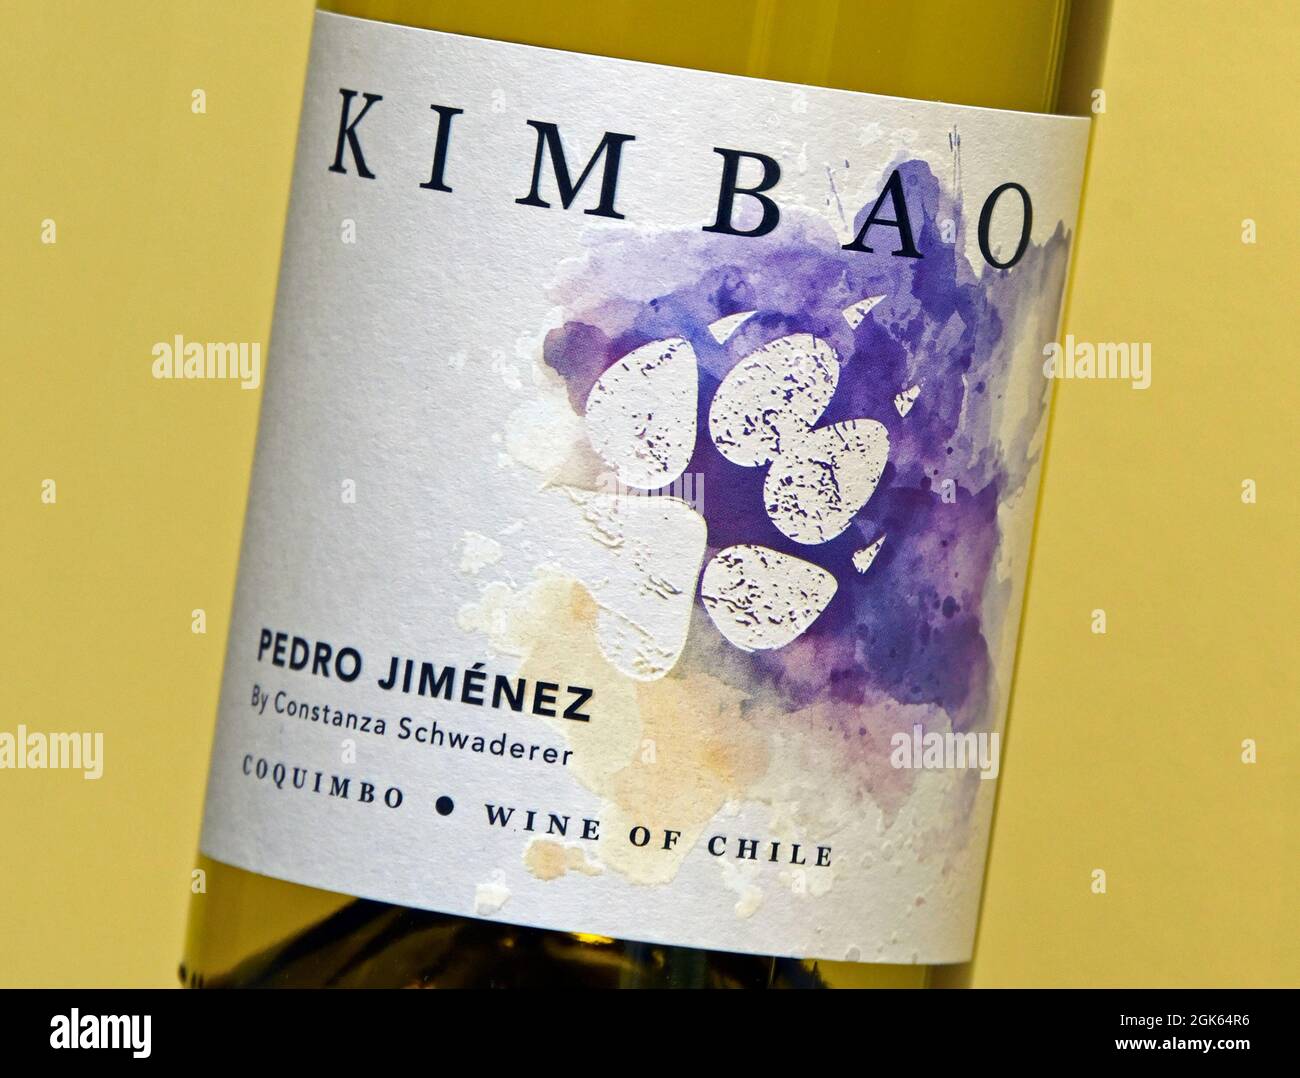 Étiquette de vin. Kimbao. Pedro Jimenez par Constanza Schwaderer. Coquimbo. Vin du Chili. Banque D'Images